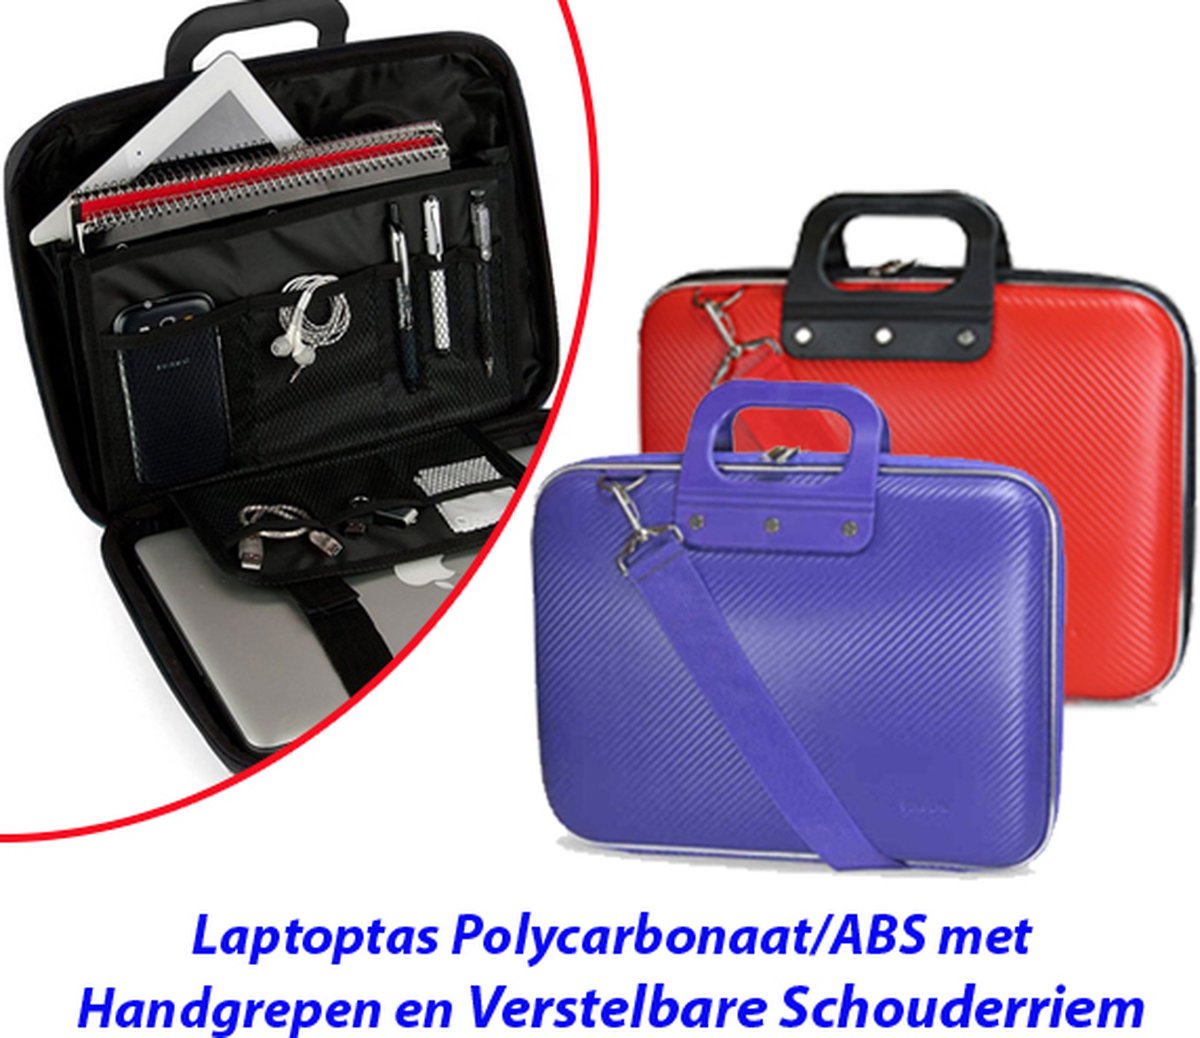 Laptoptas Polycarbonaat/ABS met Handgrepen en Verstelbare Schouderriem in Paars